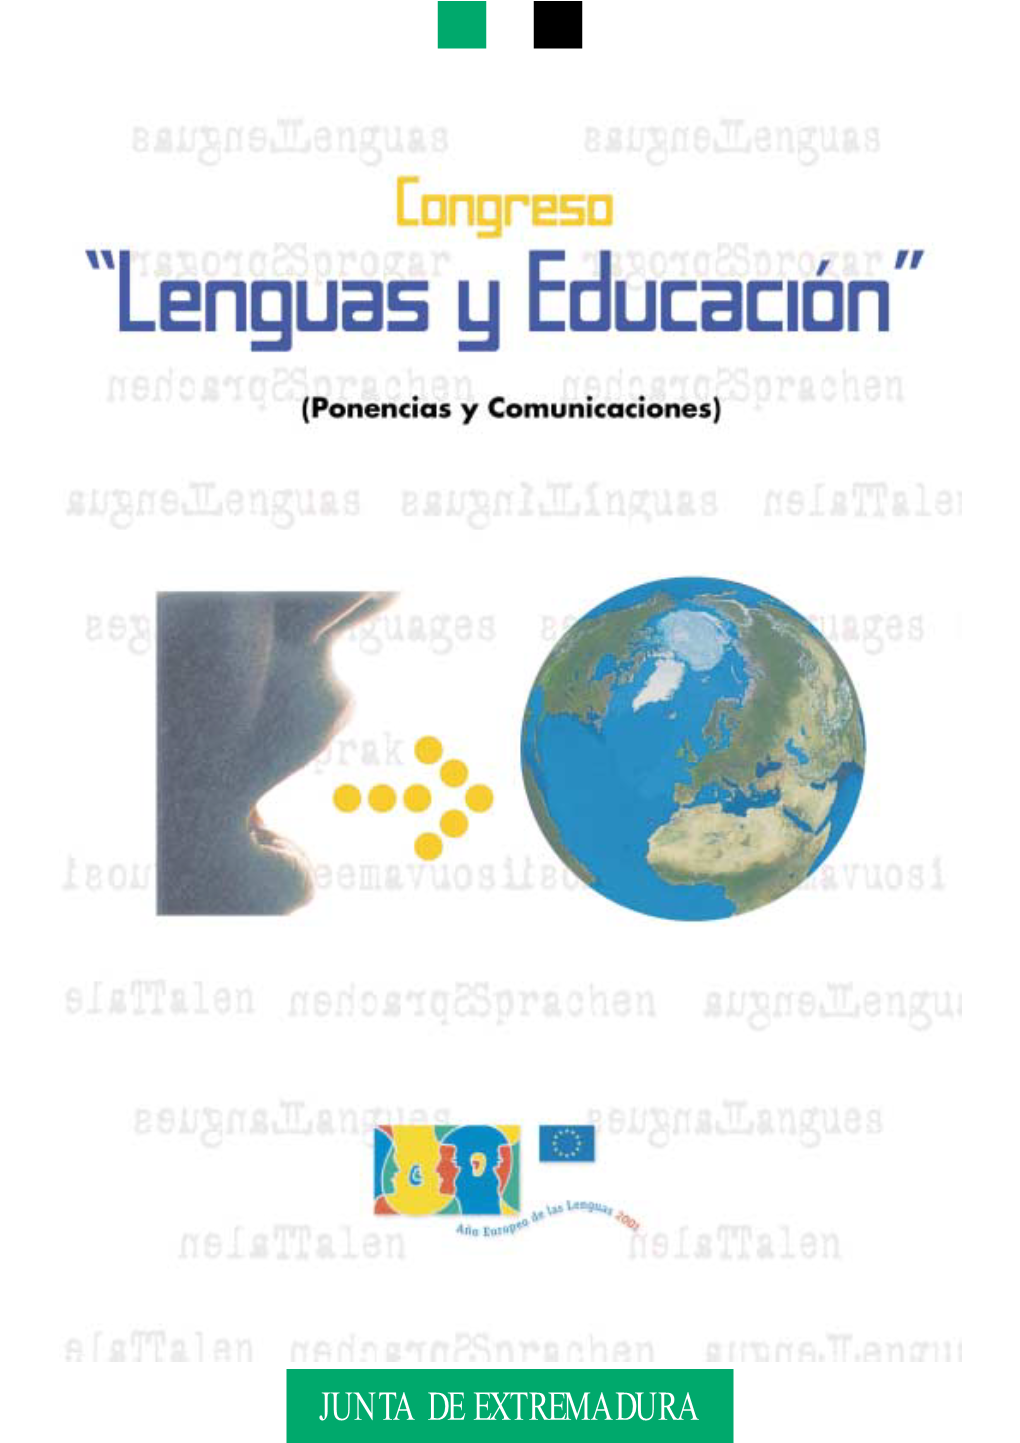 JUNTA DE EXTREMADURA Congreso “Lenguas Y Educación” © Consejería De Educación, Ciencia Y Tecnología,2002